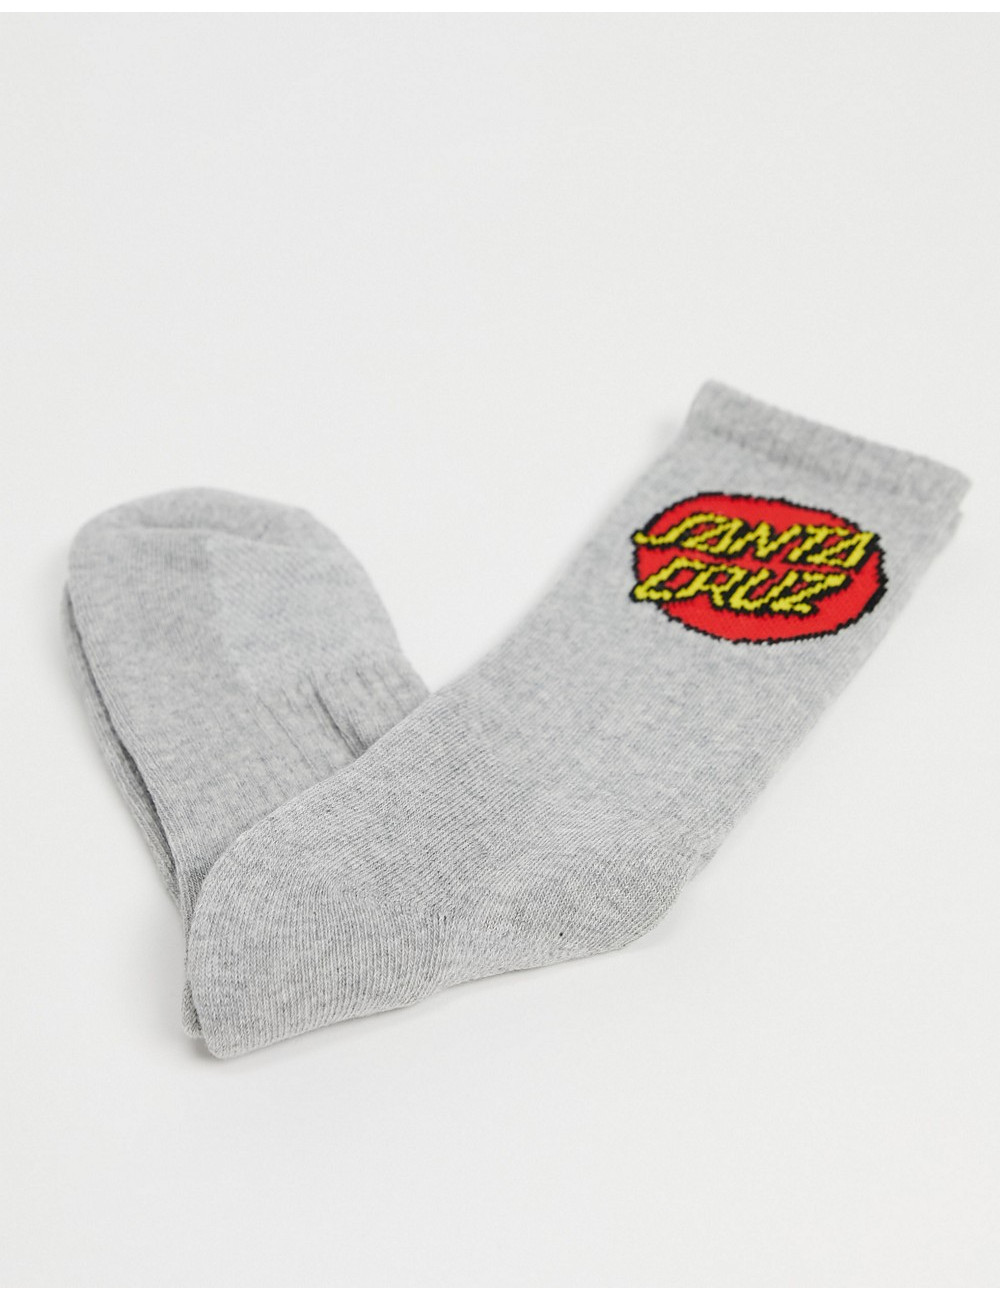 Santa Cruz dot socks in grey